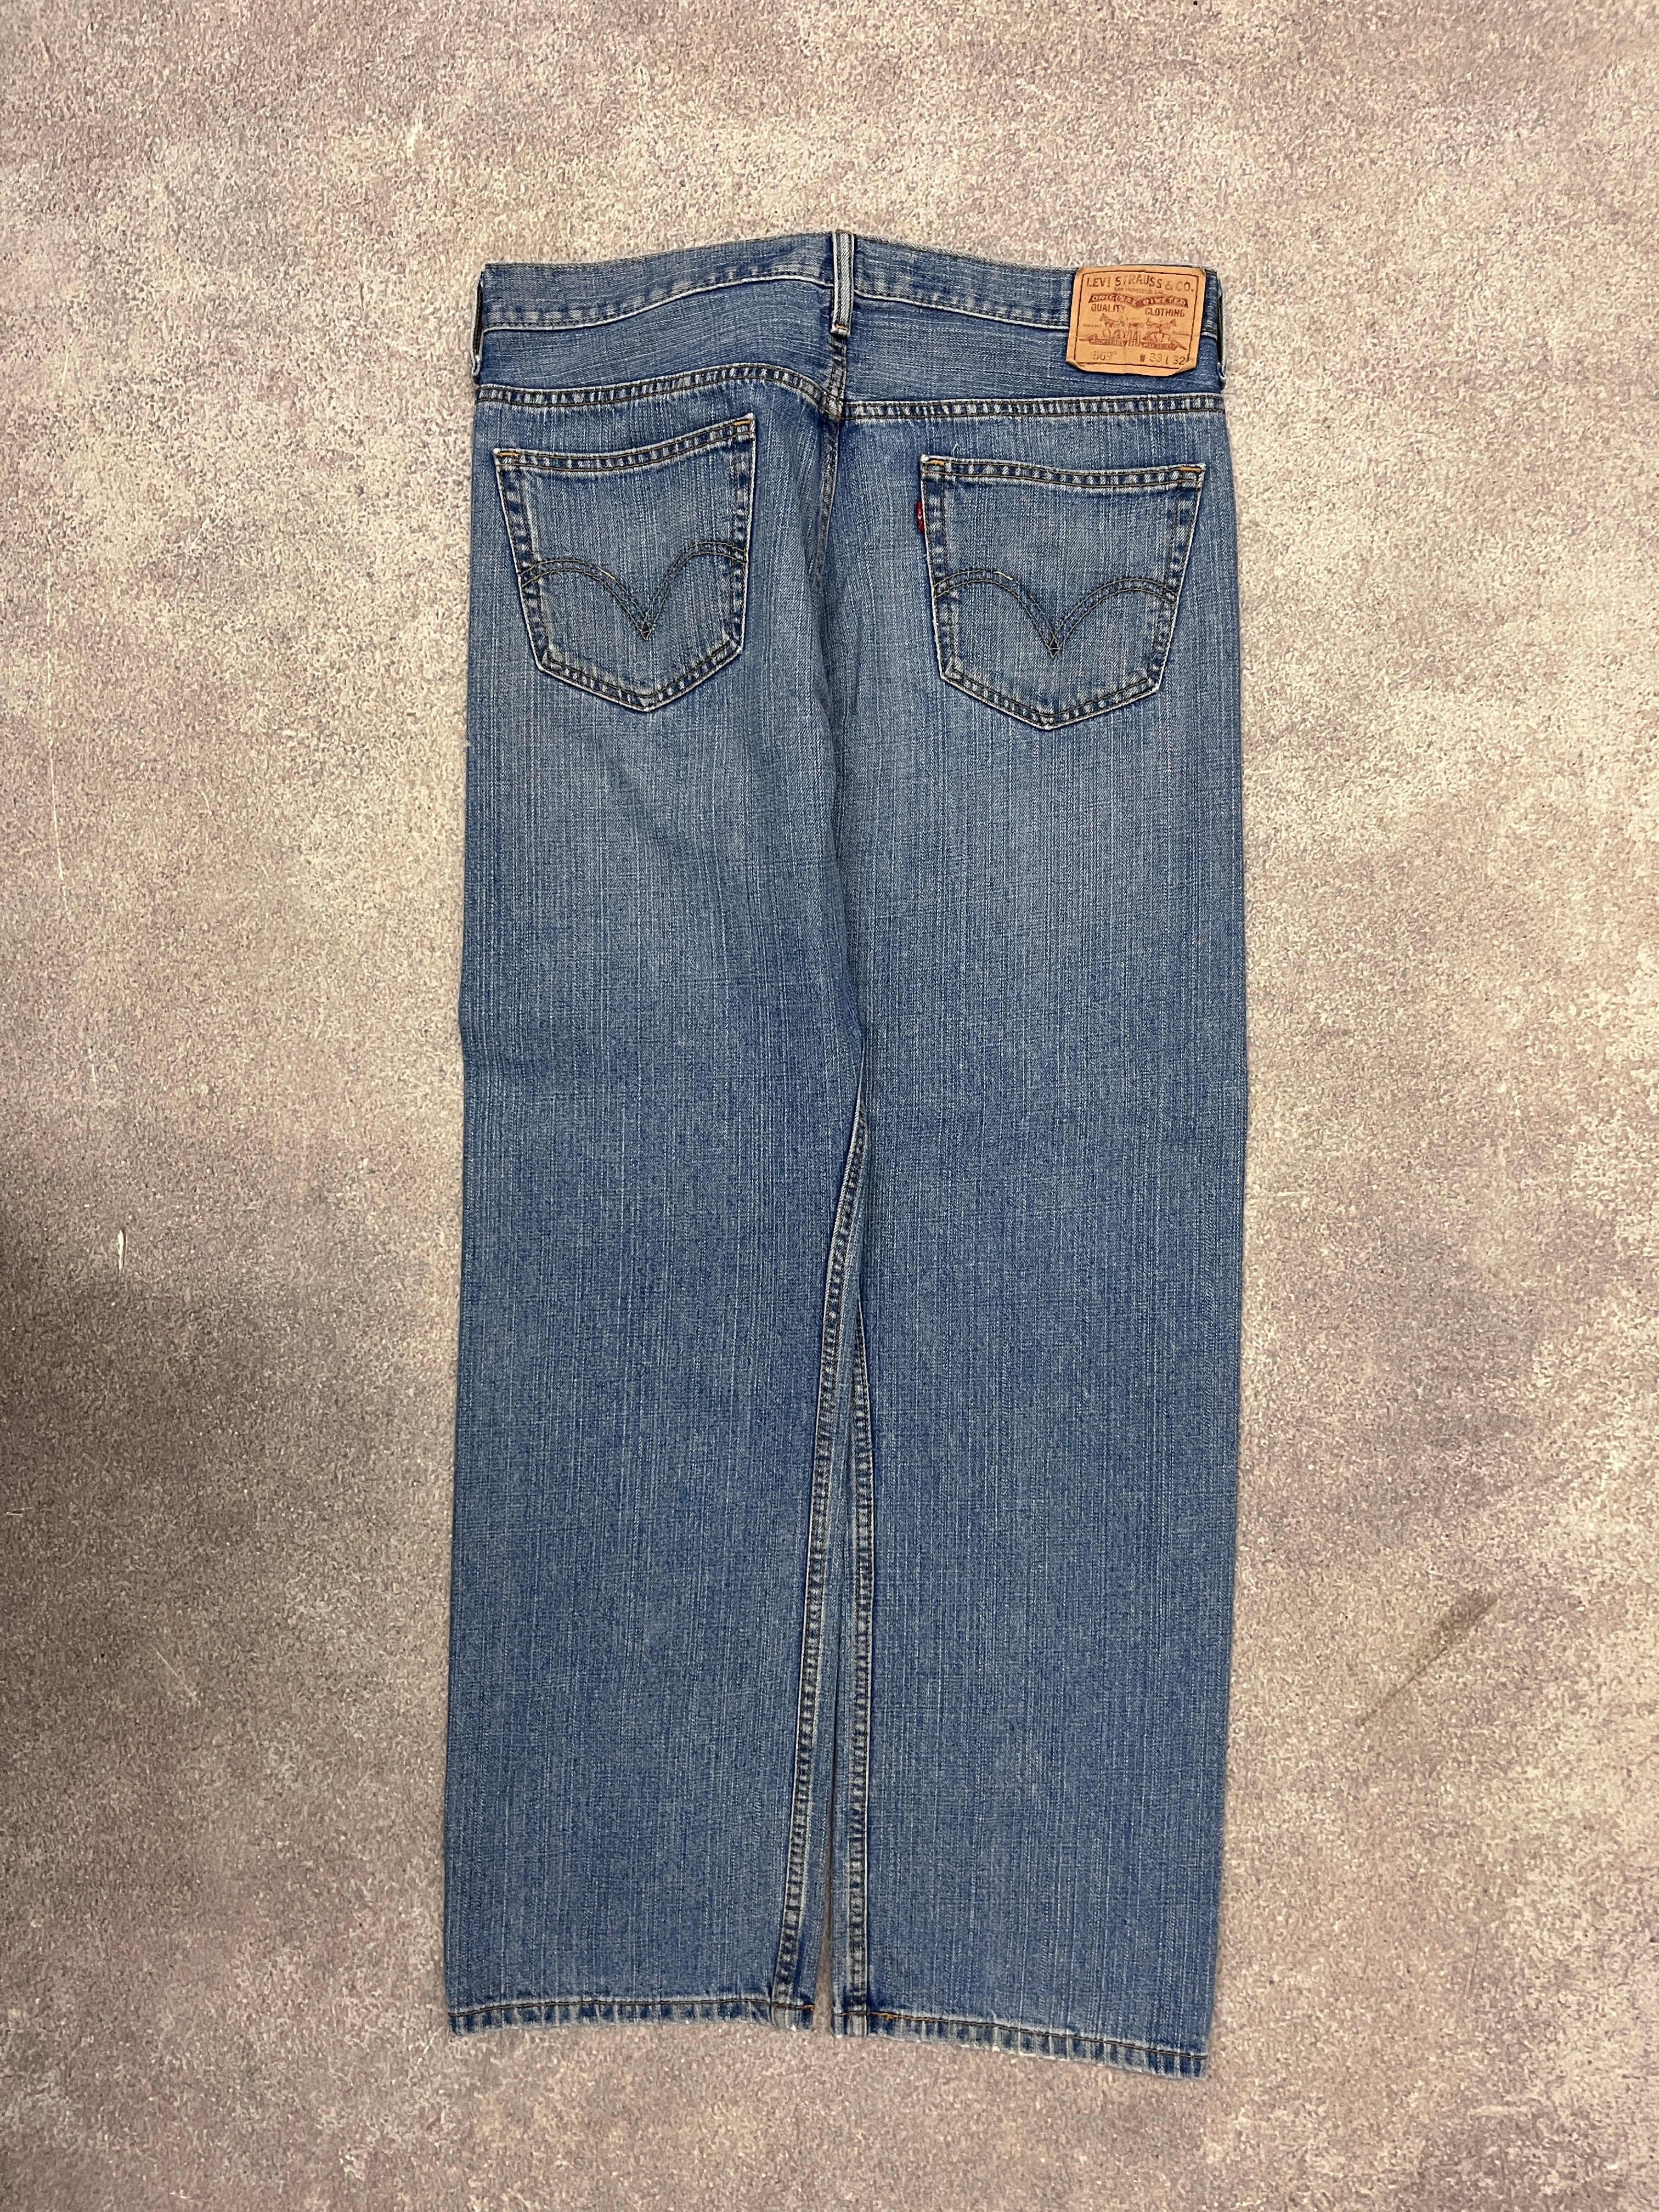 Vintage Levi 569 Denim Jeans Blue // W33 L32 - RHAGHOUSE VINTAGE